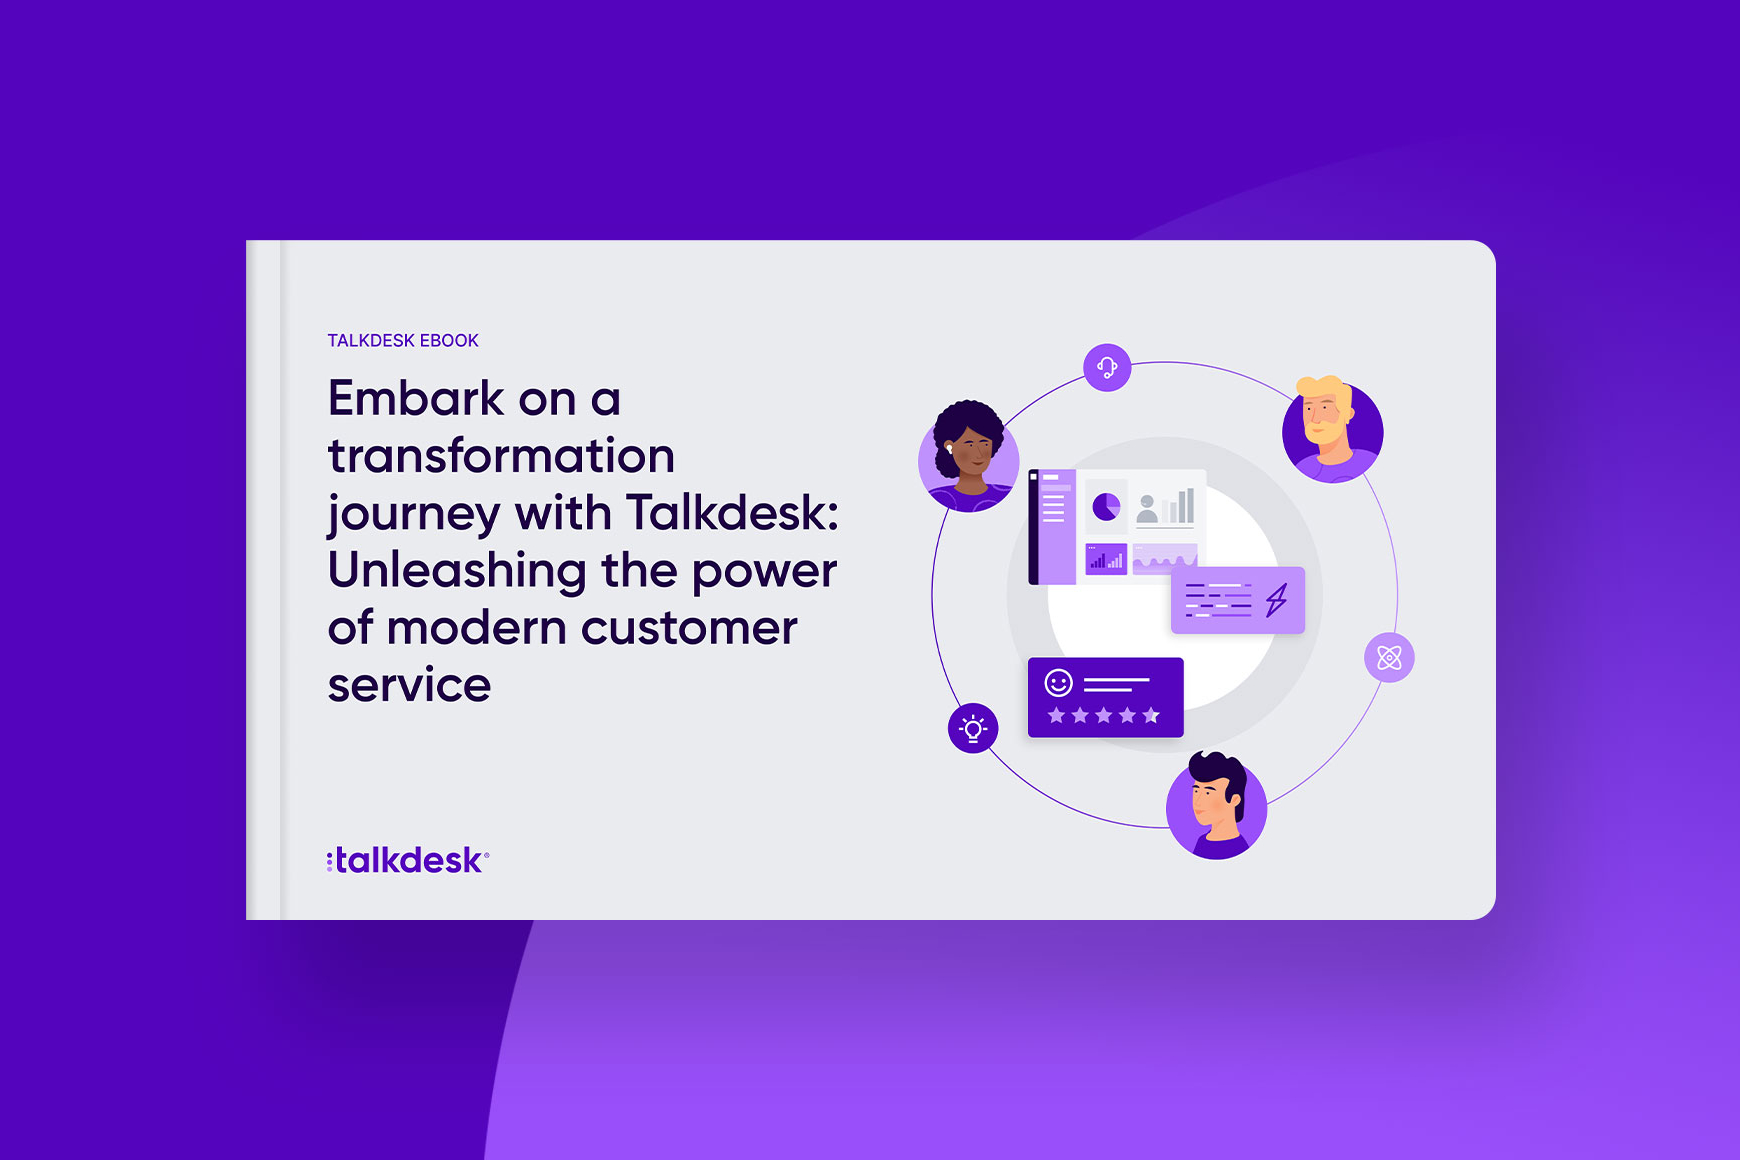 Emprenda un viaje de transformación con Talkdesk: libere el poder de un moderno servicio de atención al cliente.